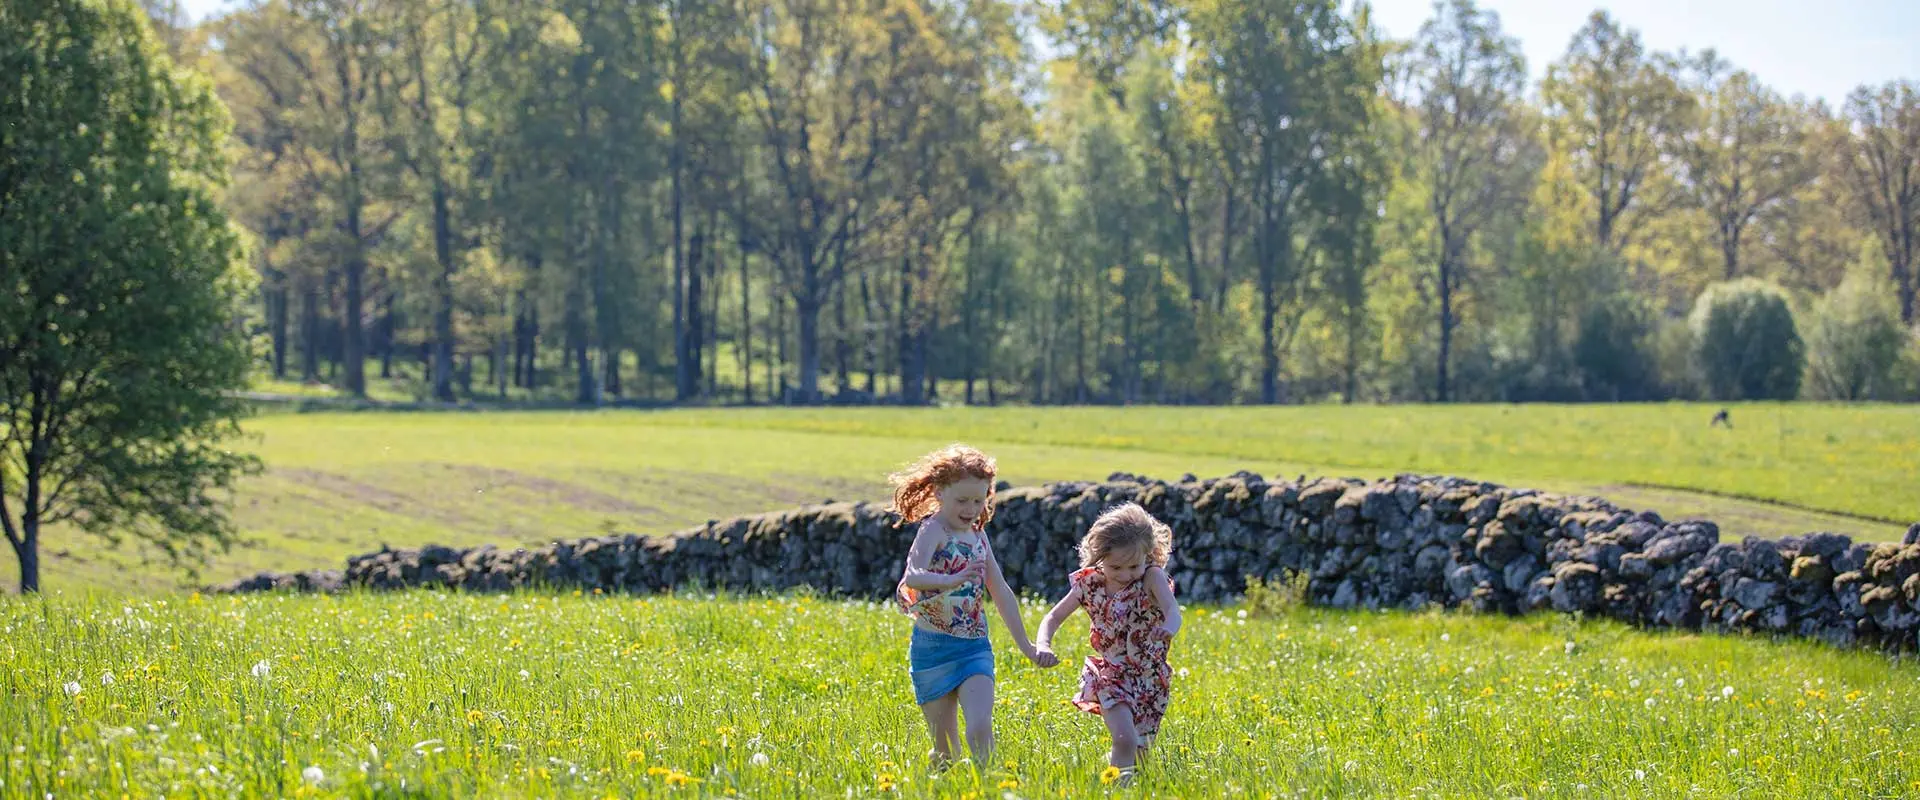 Children in a meadow